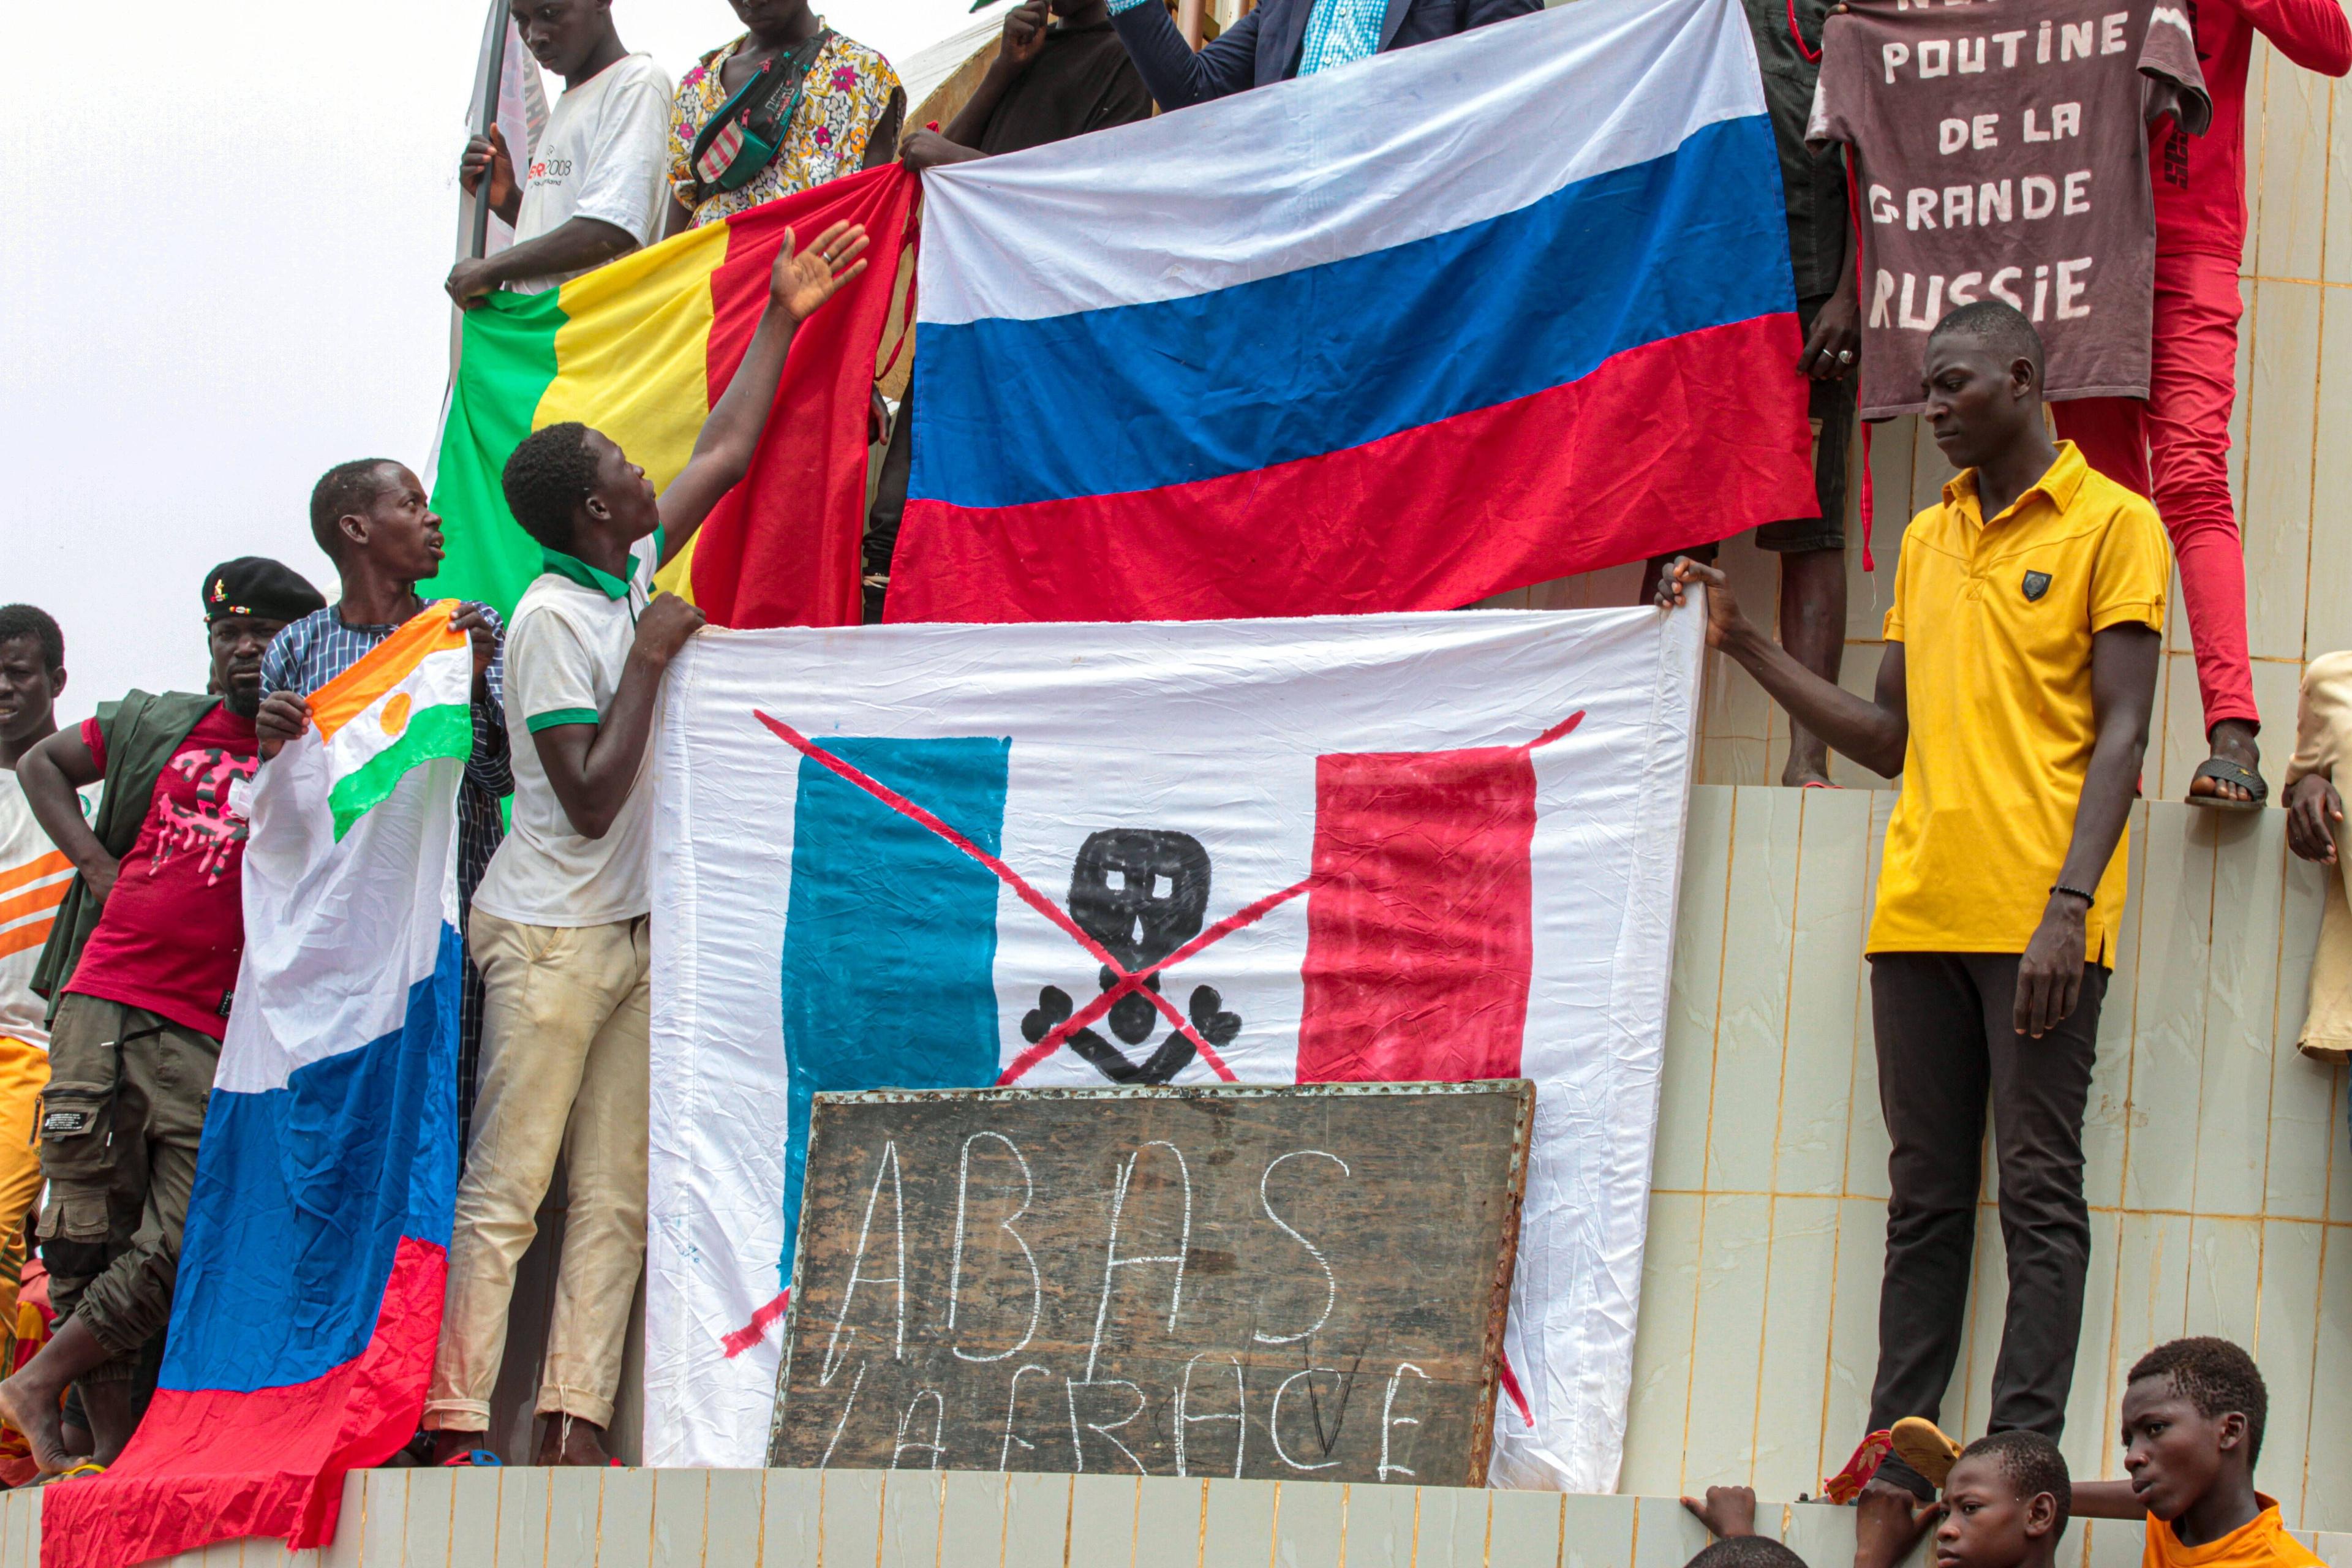 Demonstrierende in Niamey zeigen Flagge unweit der nigrischen Nationalversammlung und der französischen Botschaft.